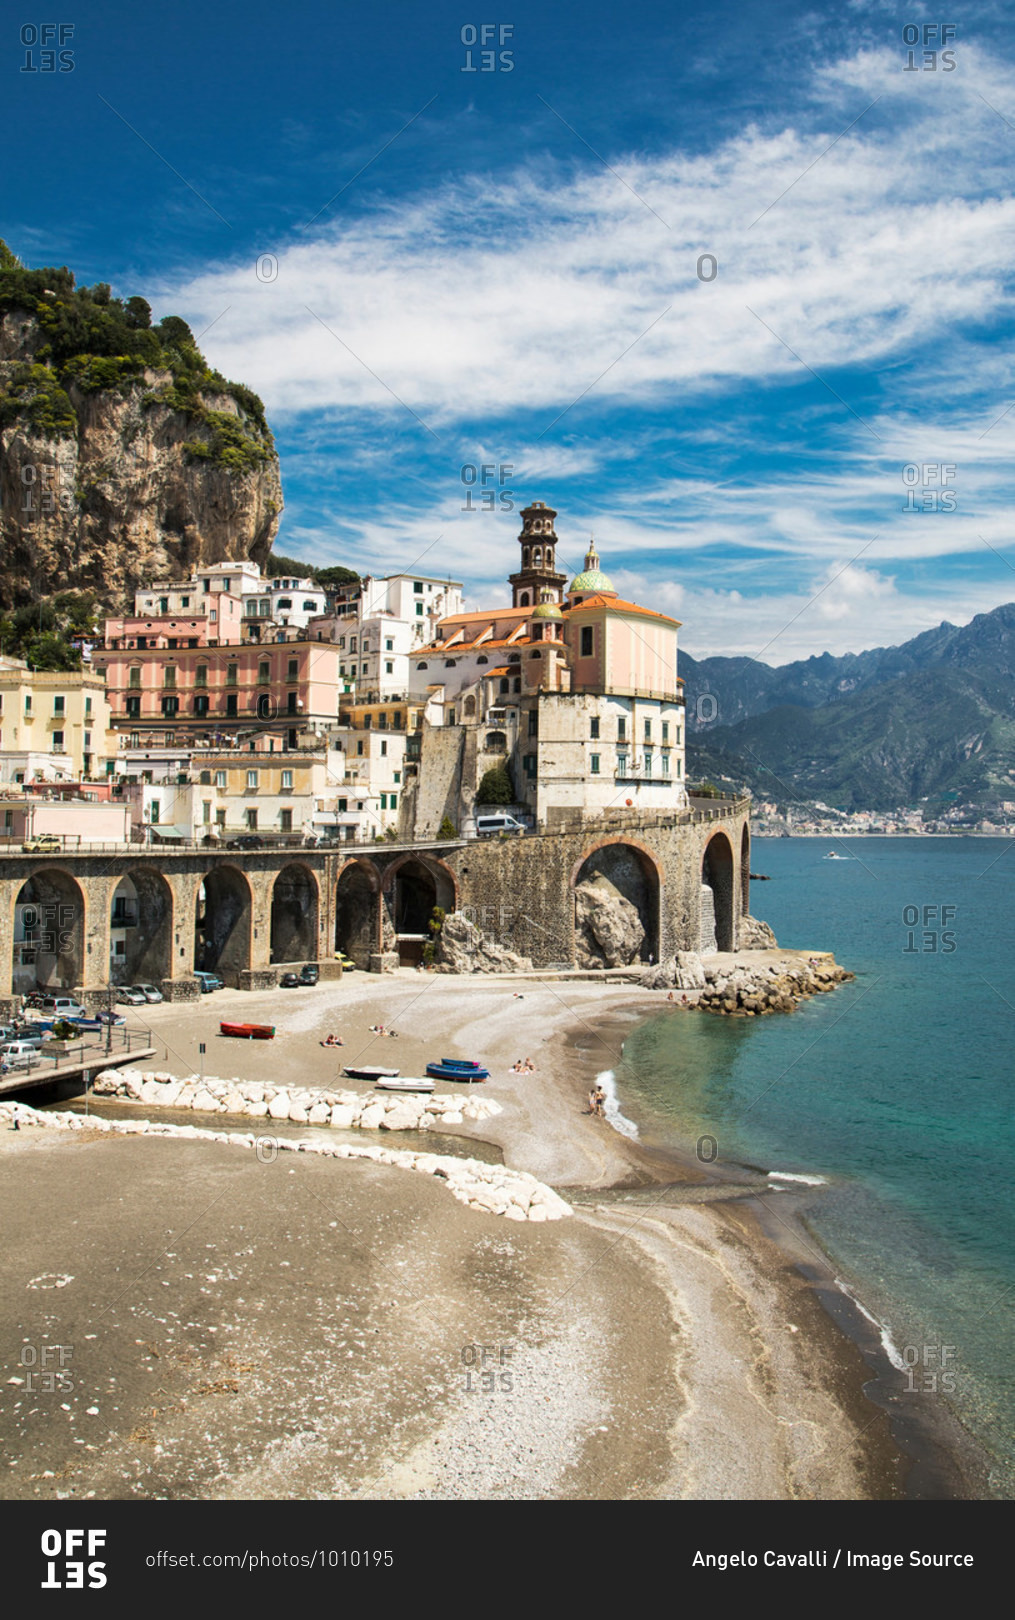 The village of Atrani, on the Amalfi Coast, Campania, Italy